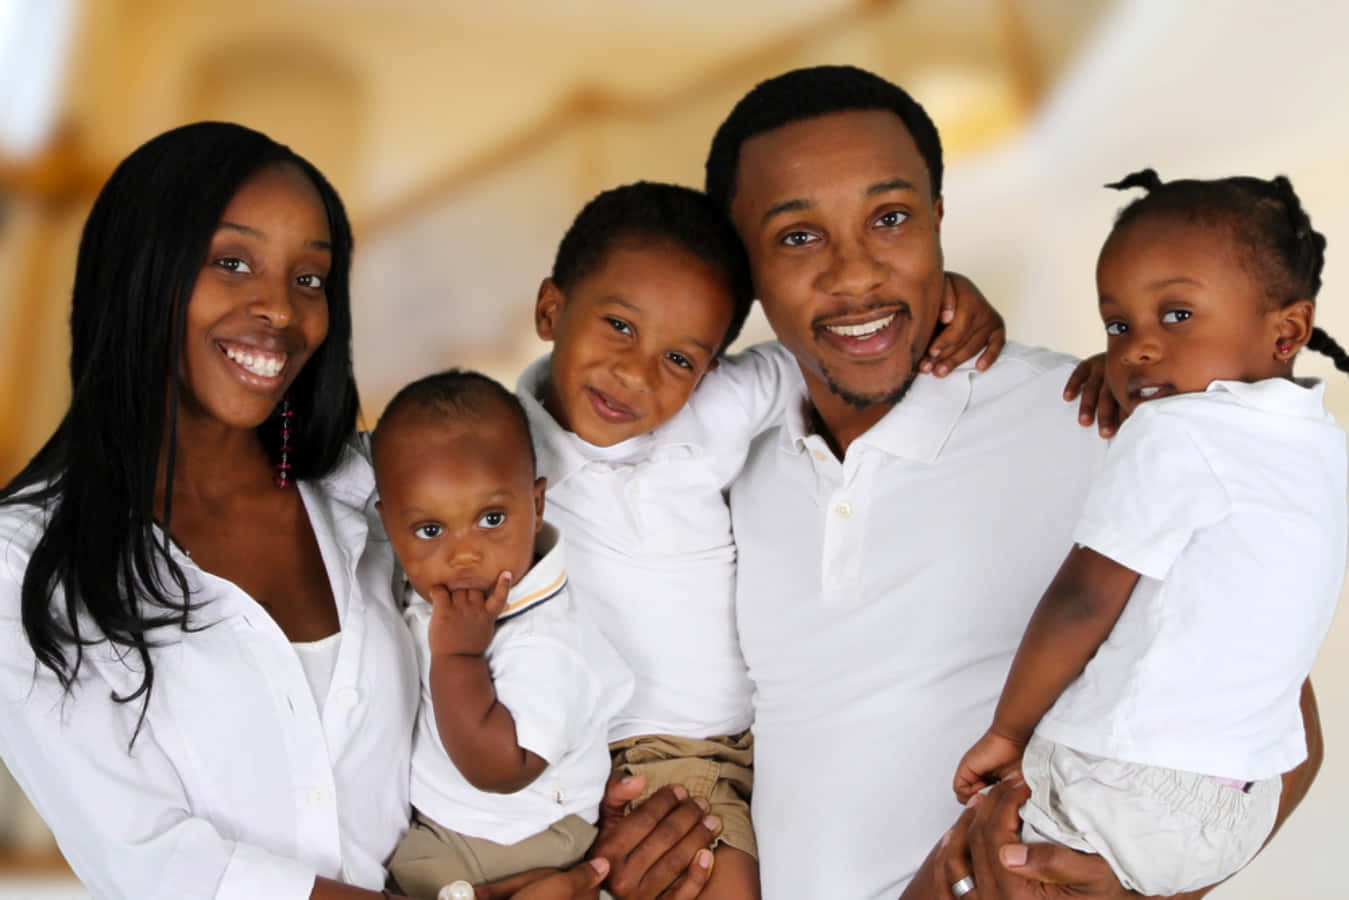 A loving, happy black family